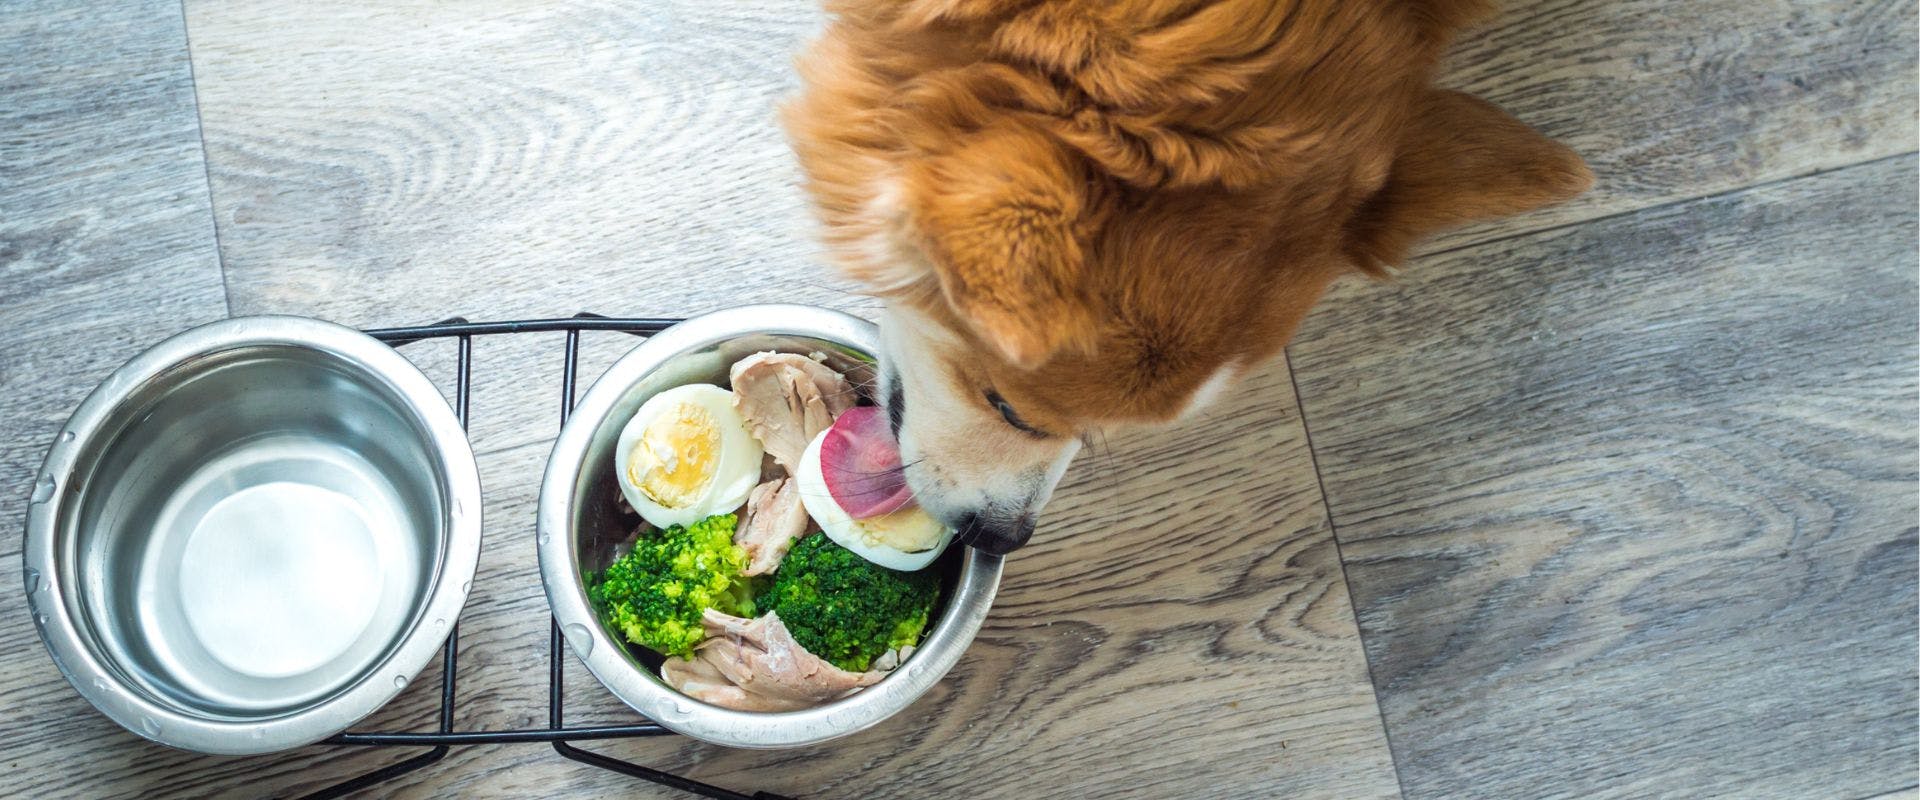 Dog eating broccoli and eggs